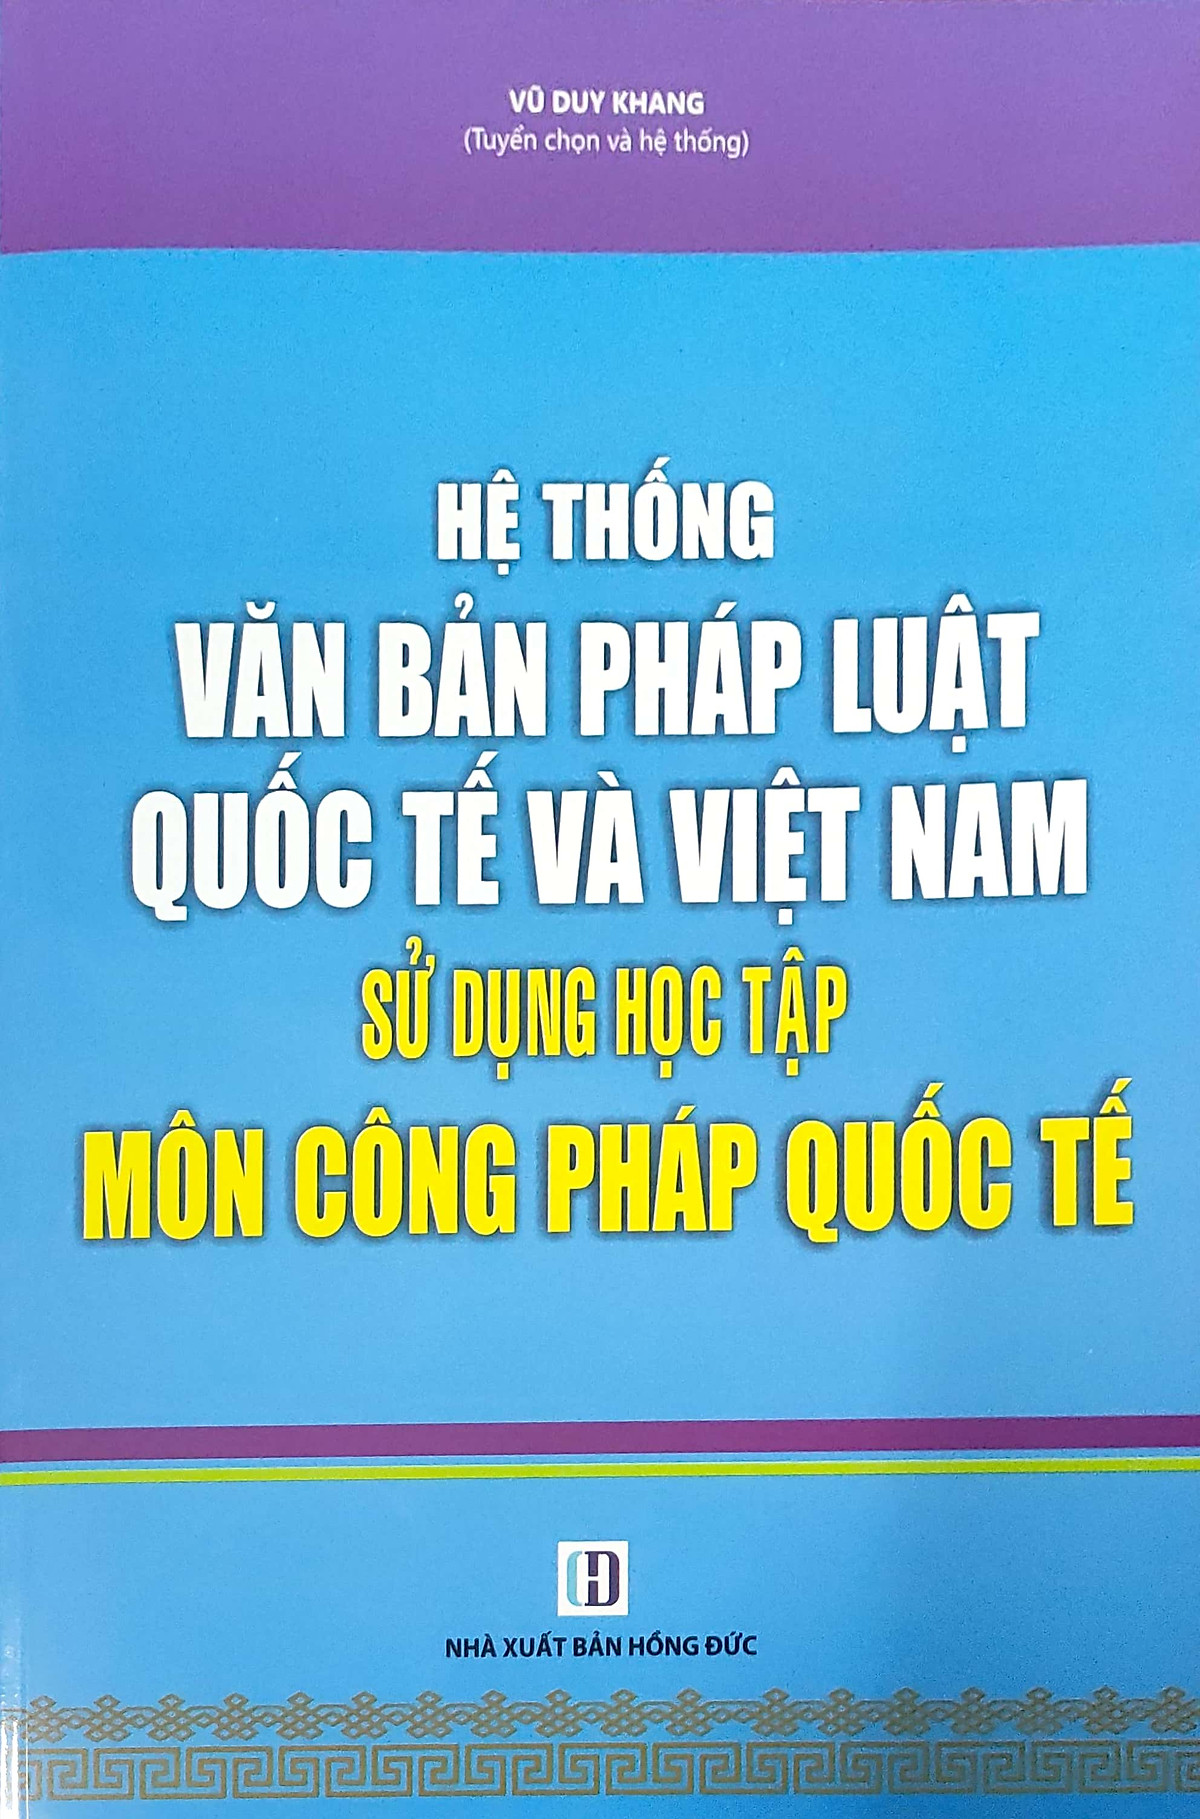 Hệ thống văn bản pháp luật quốc tế và Việt Nam - Sử dụng học tập môn công pháp quốc tế